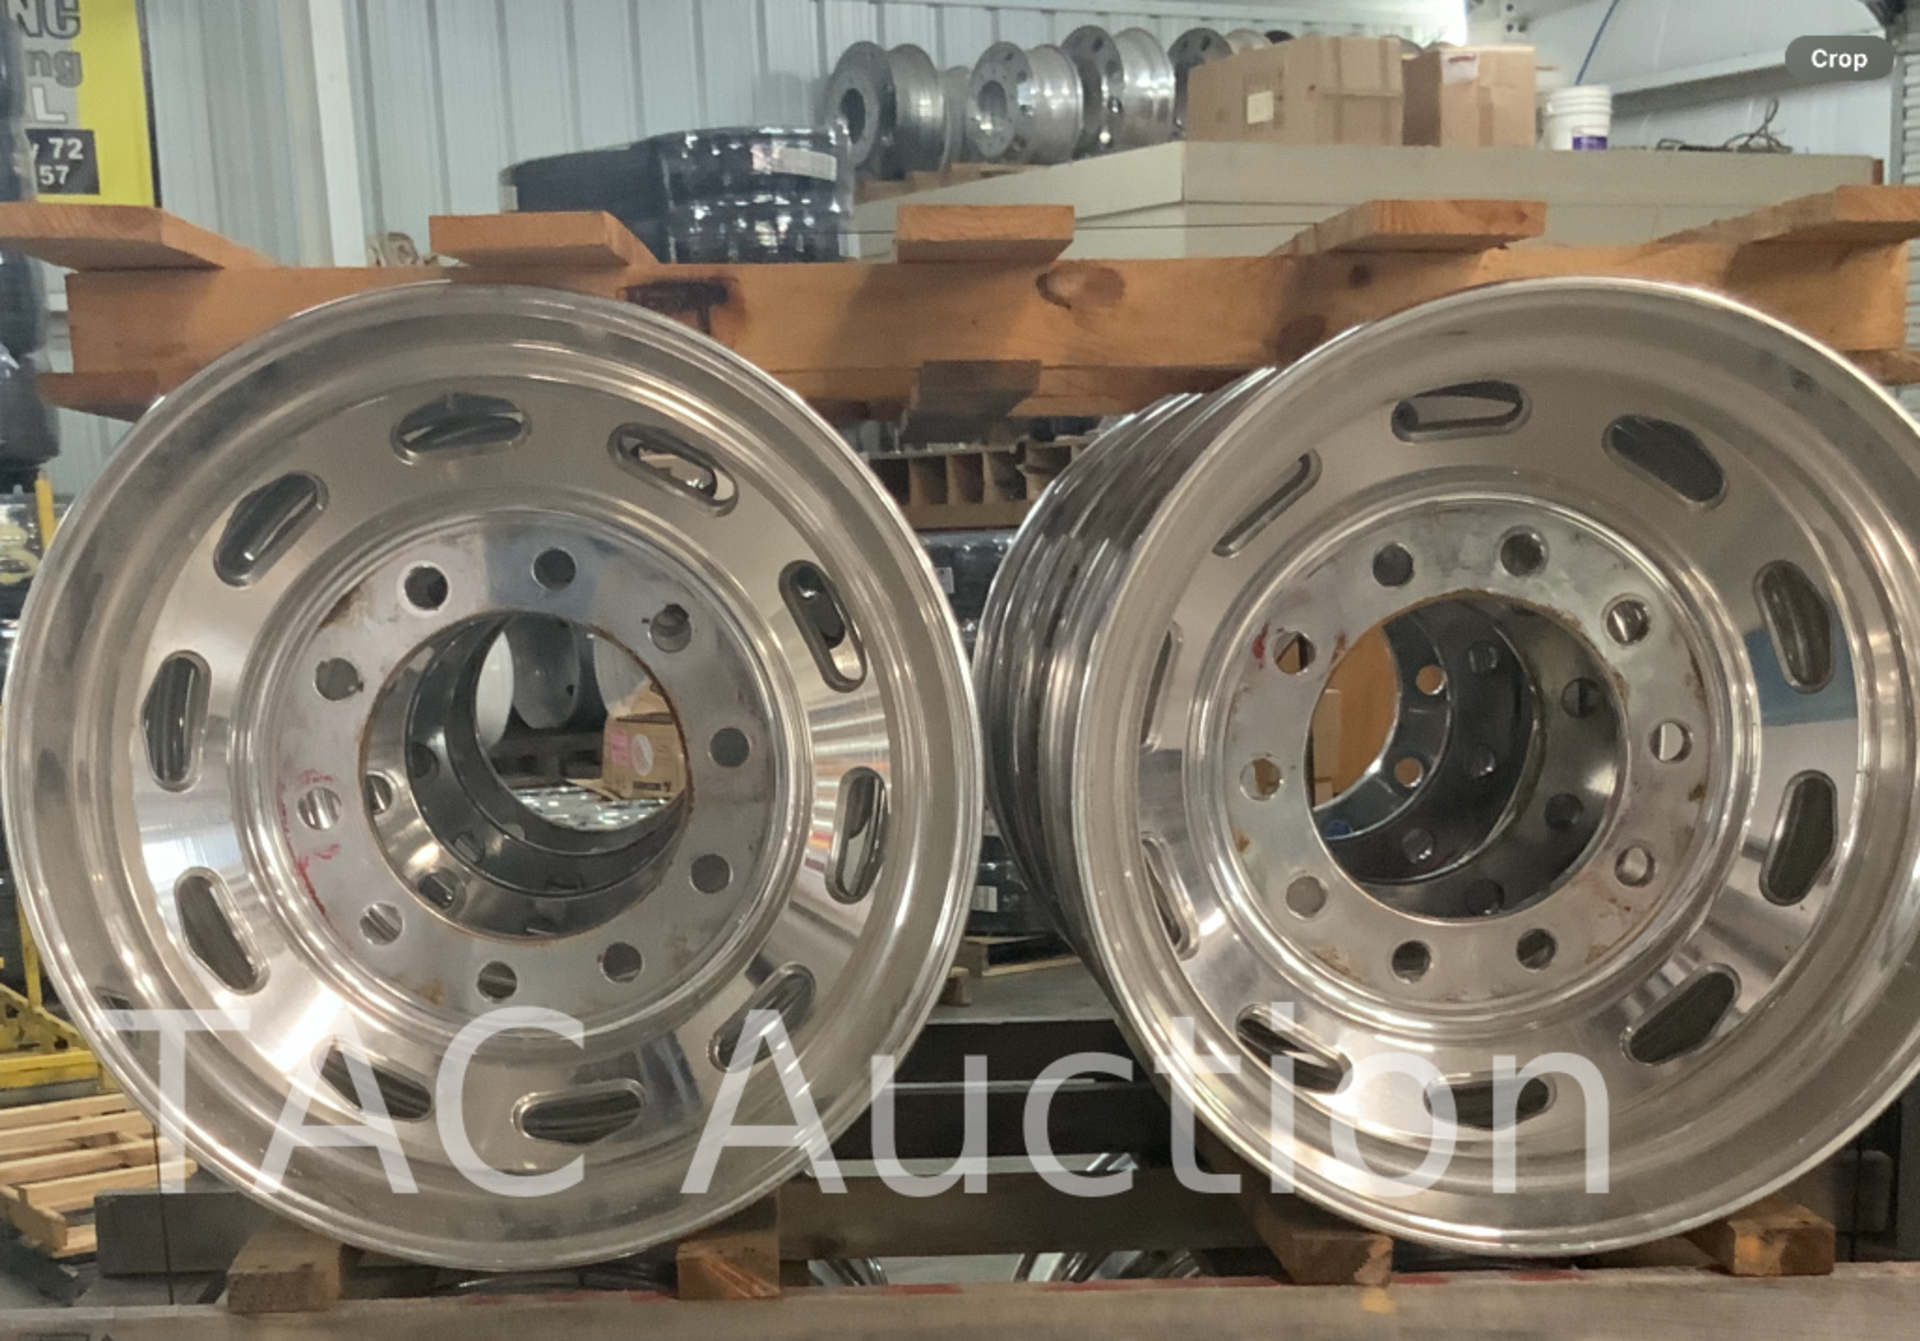 New (8) Accuride Aluminum Wheels 8.25 X 22.5 - Image 2 of 3